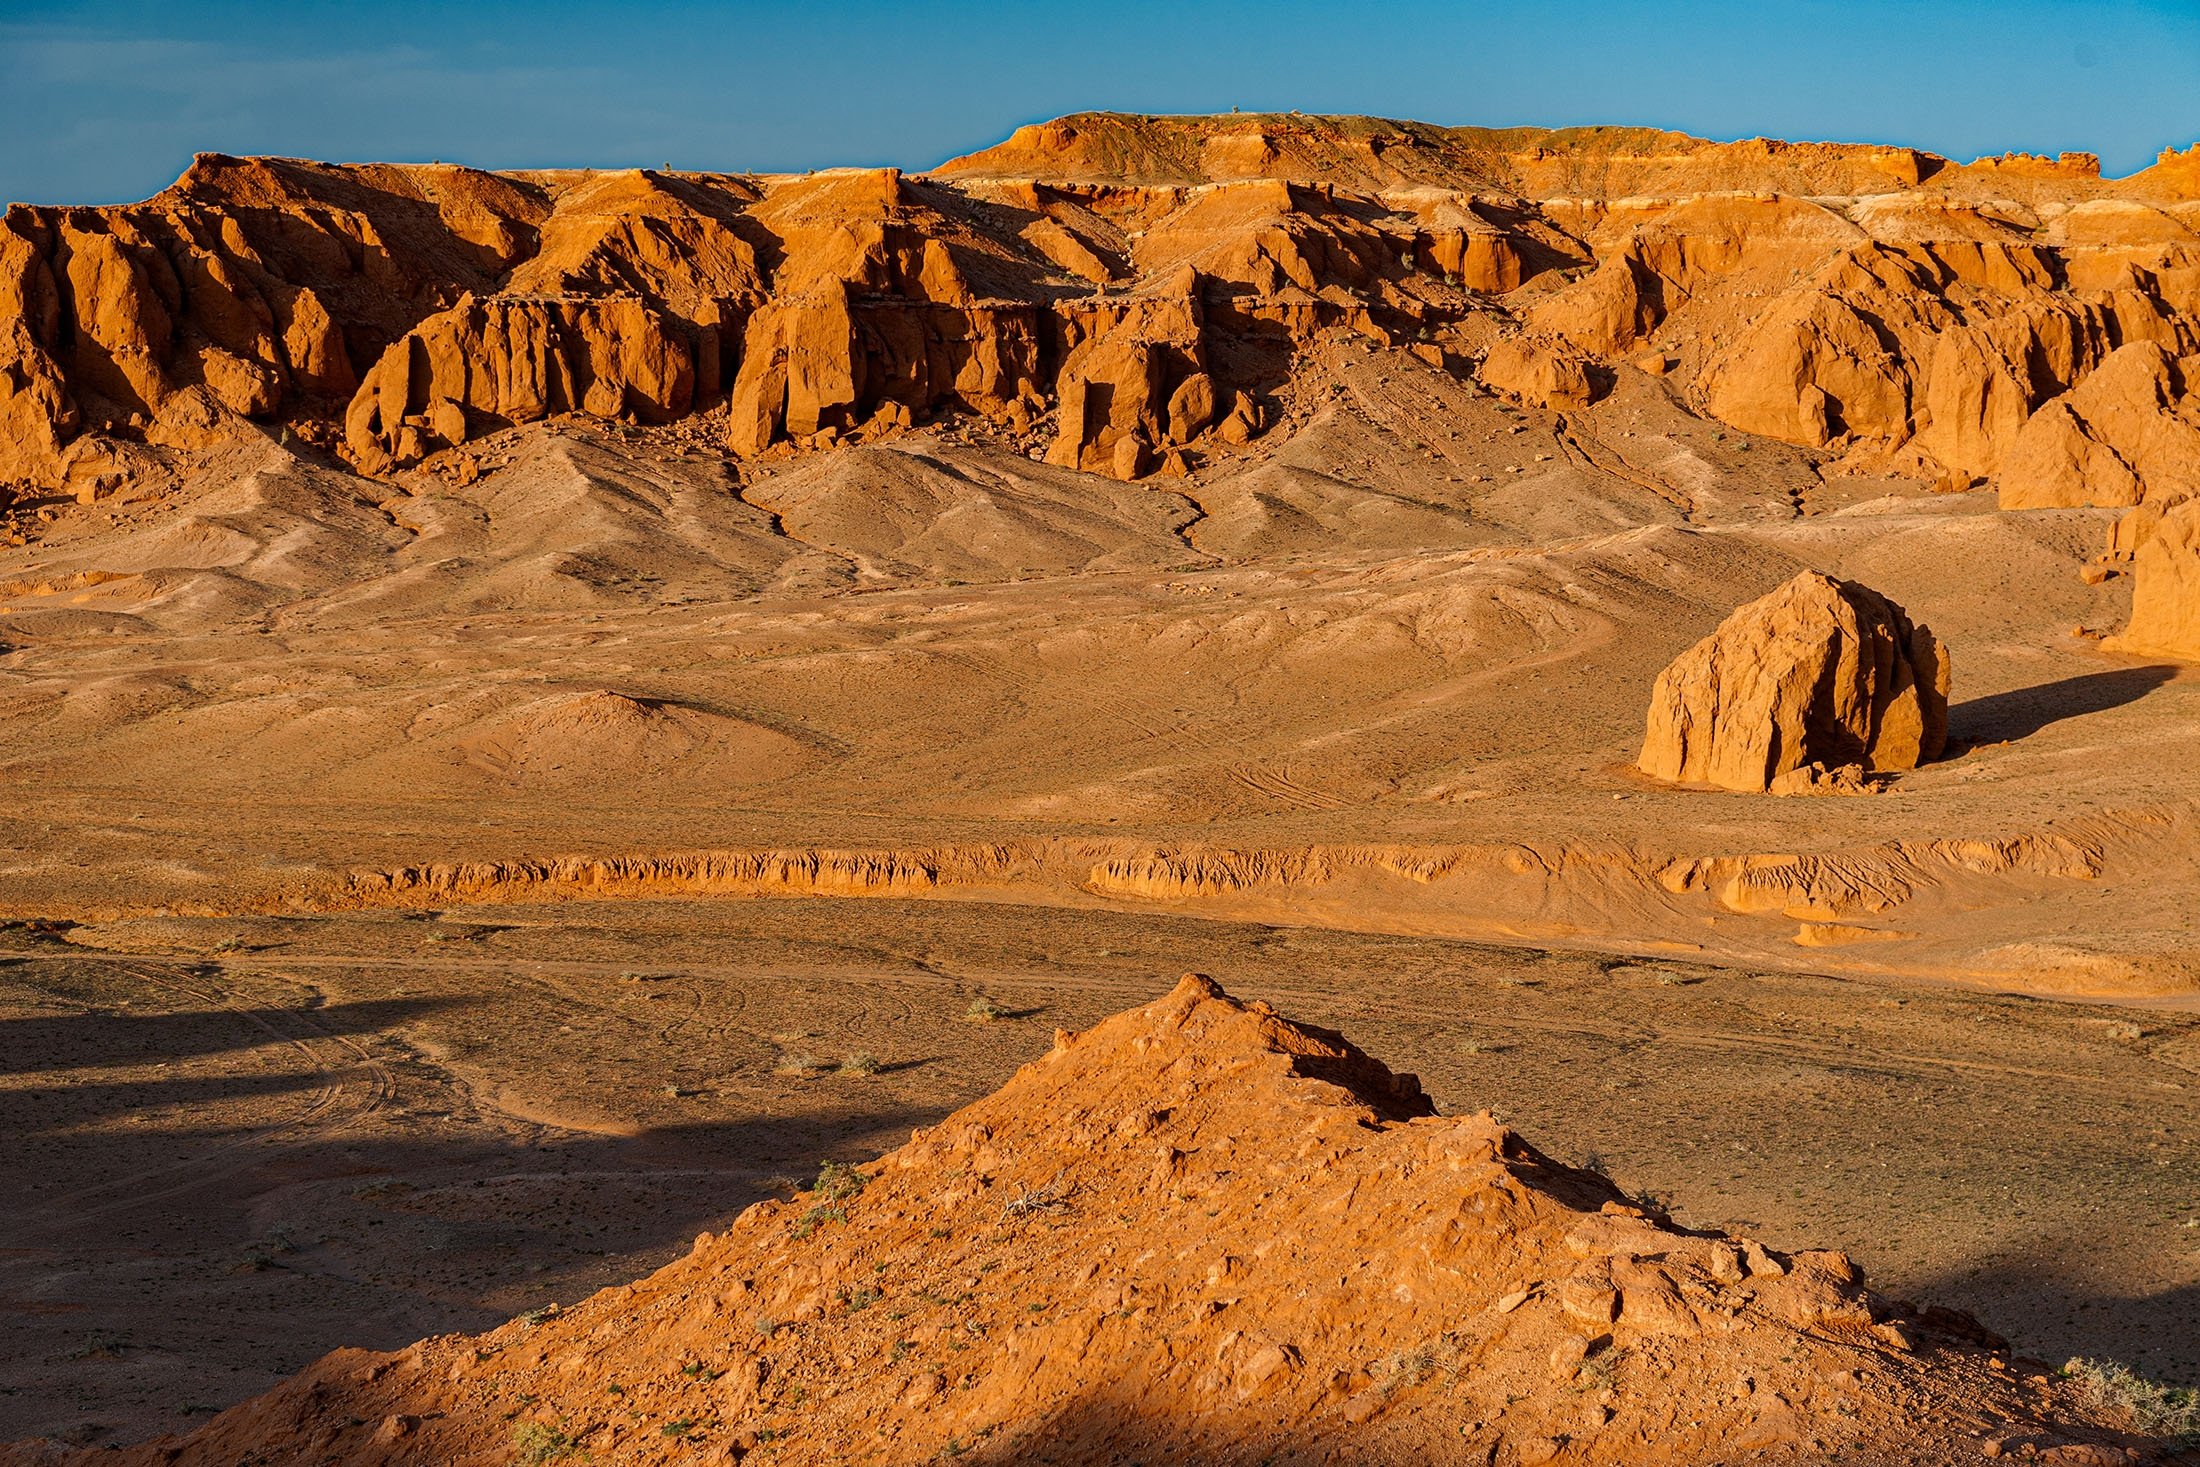 El desierto de Gobi es una vasta región desértica o matorral en el este de Asia.  (Foto Shutterstock)